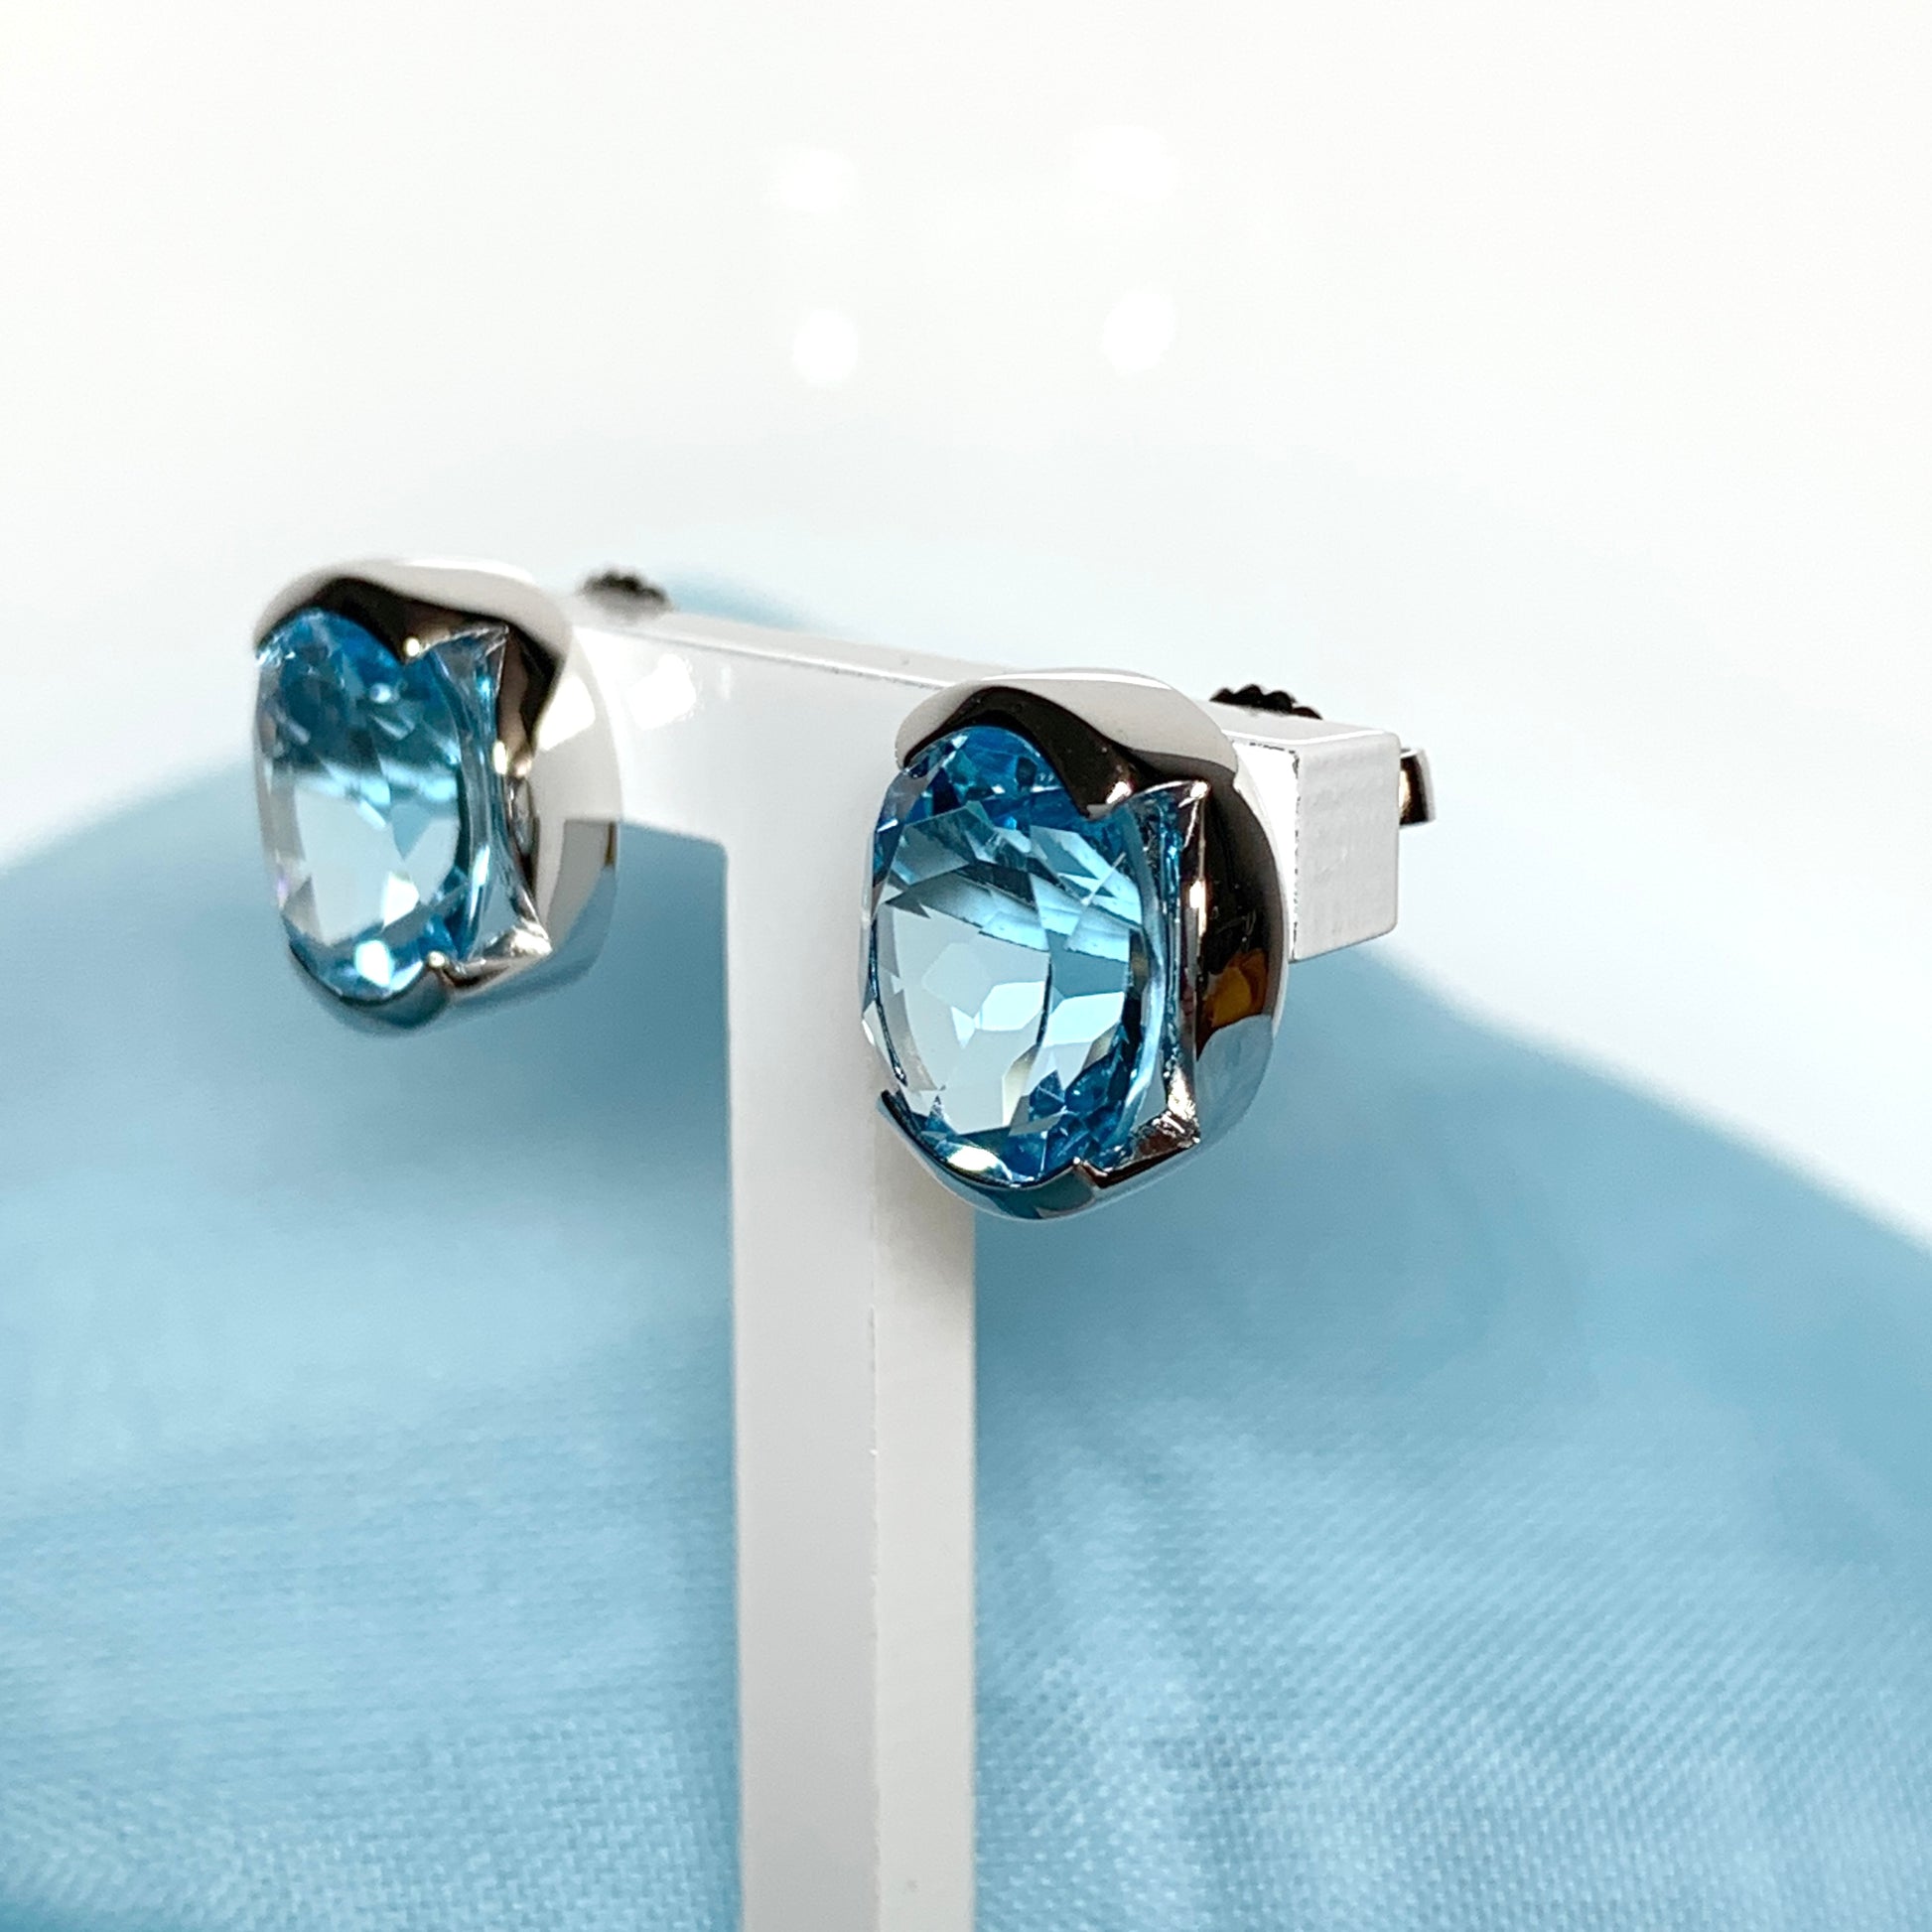 Real blue topaz oval stud earrings fancy sterling silver